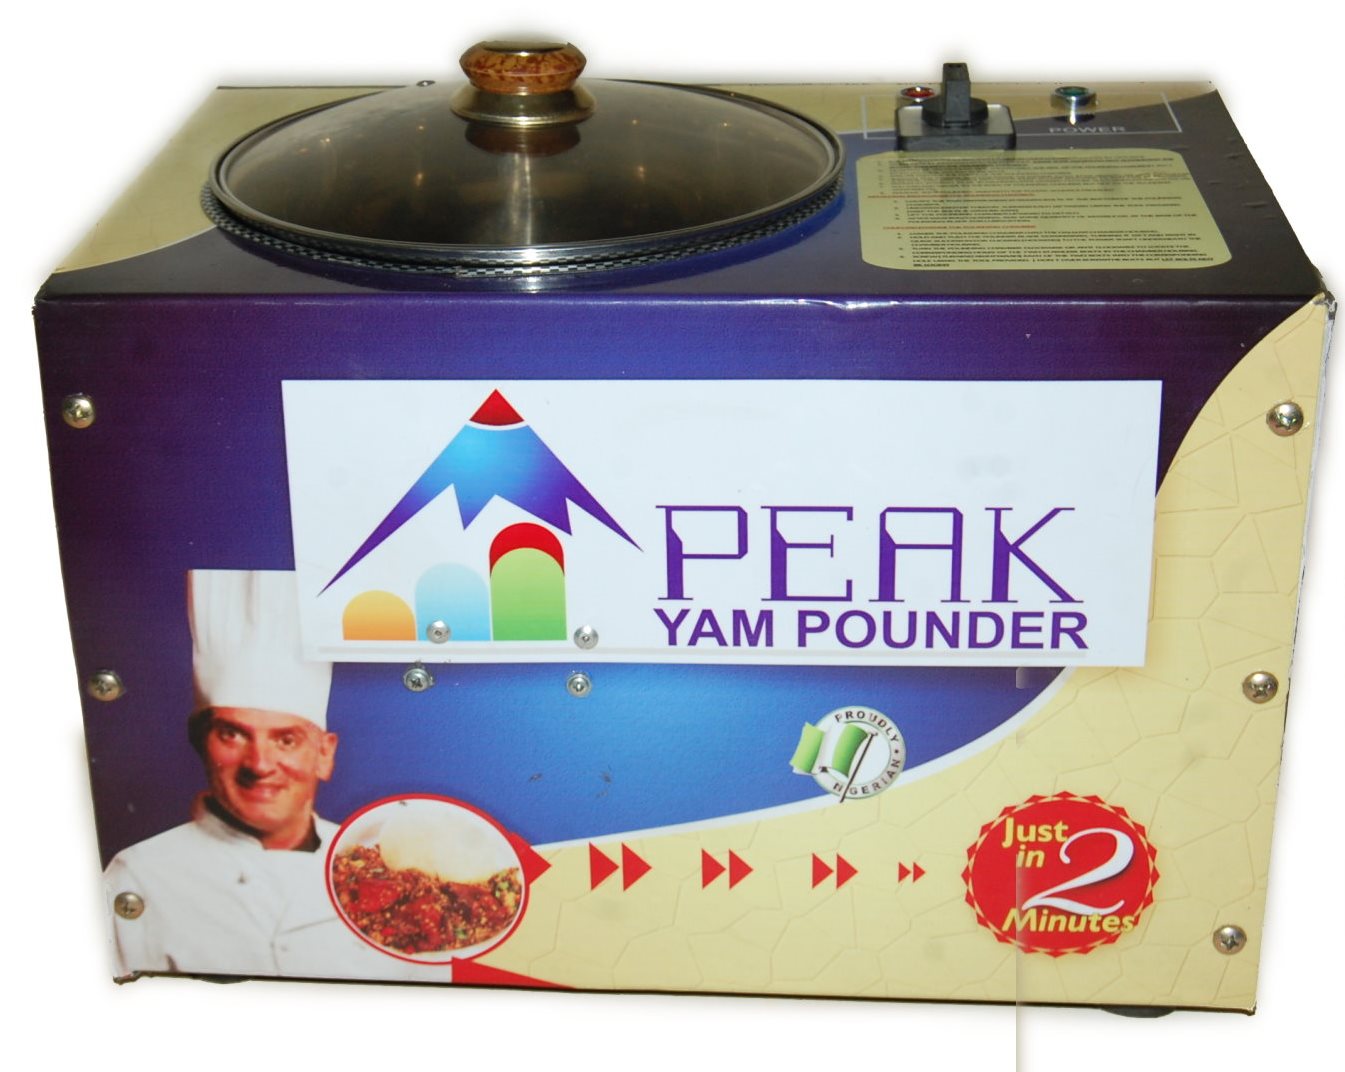 Peak Yam Pounder Family